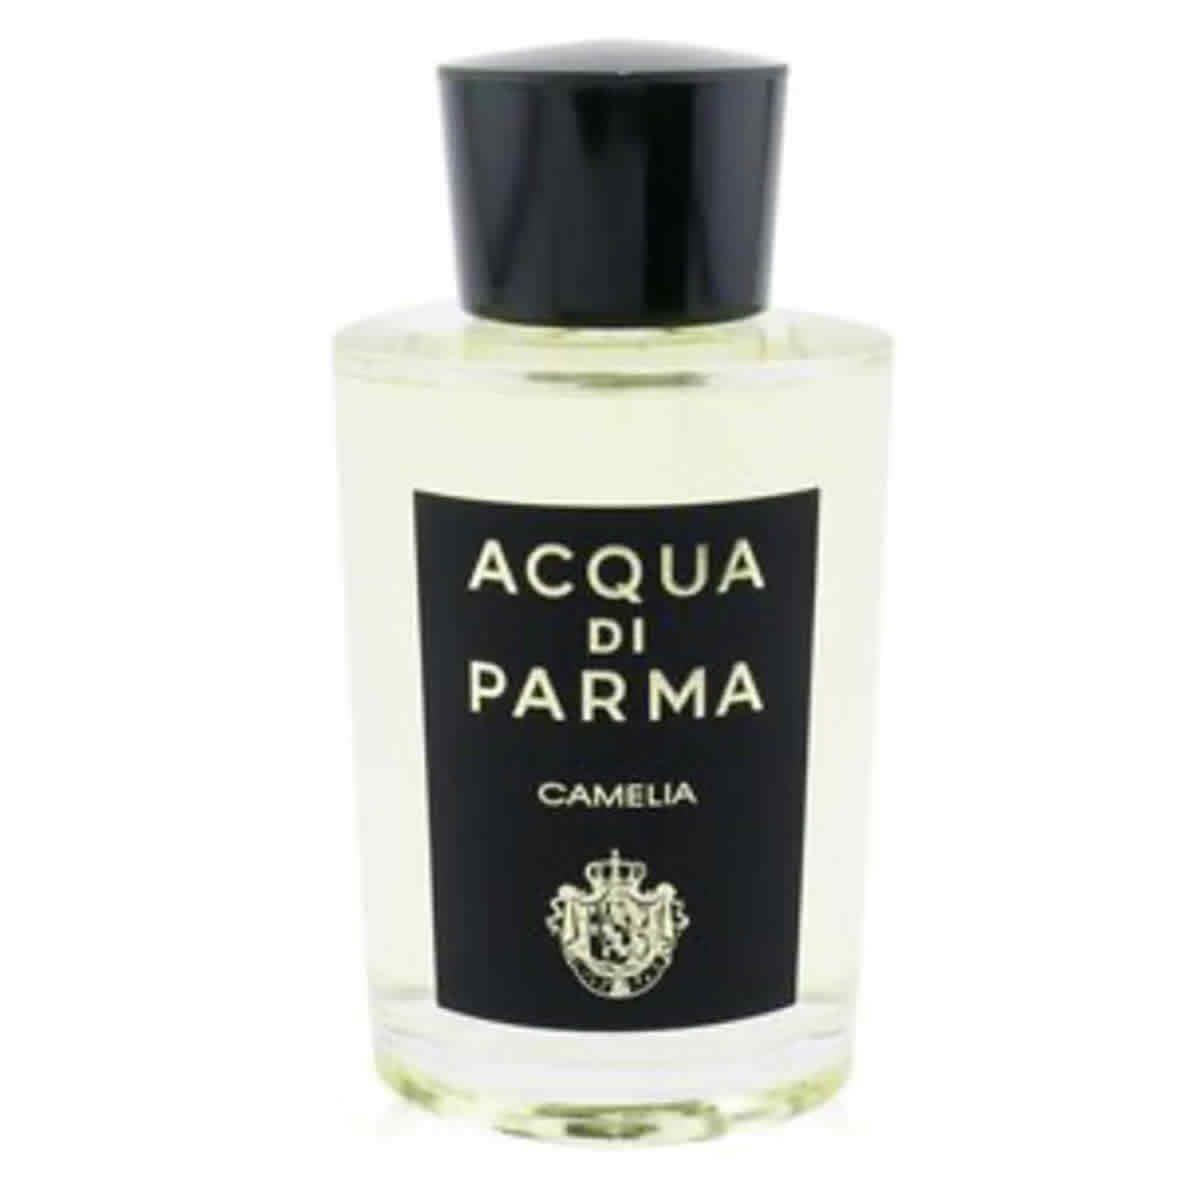 Acqua Di Parma - Signatures Of The Sun Camelia Eau de Parfum Spray 180ml/6oz